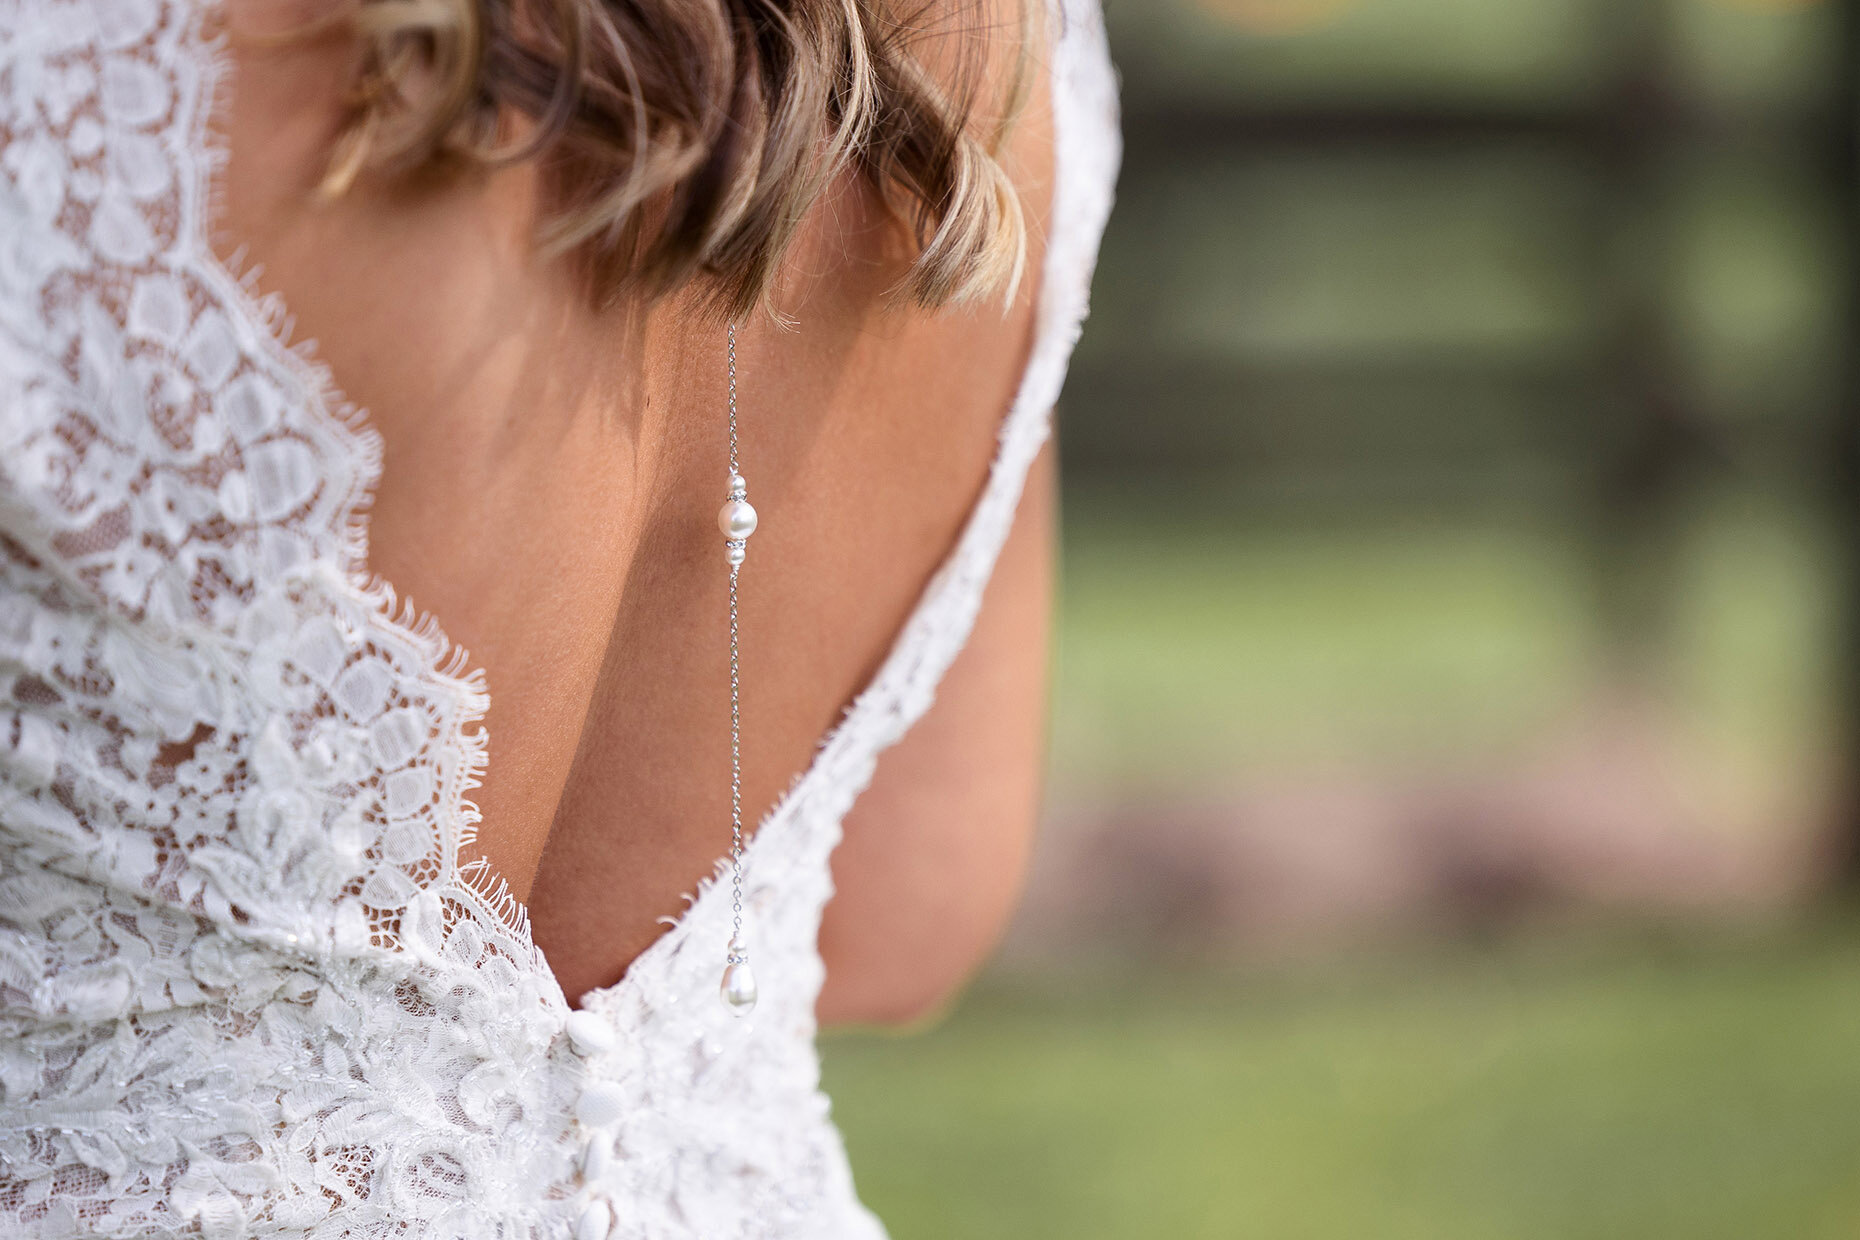 Back Necklace detail on bride